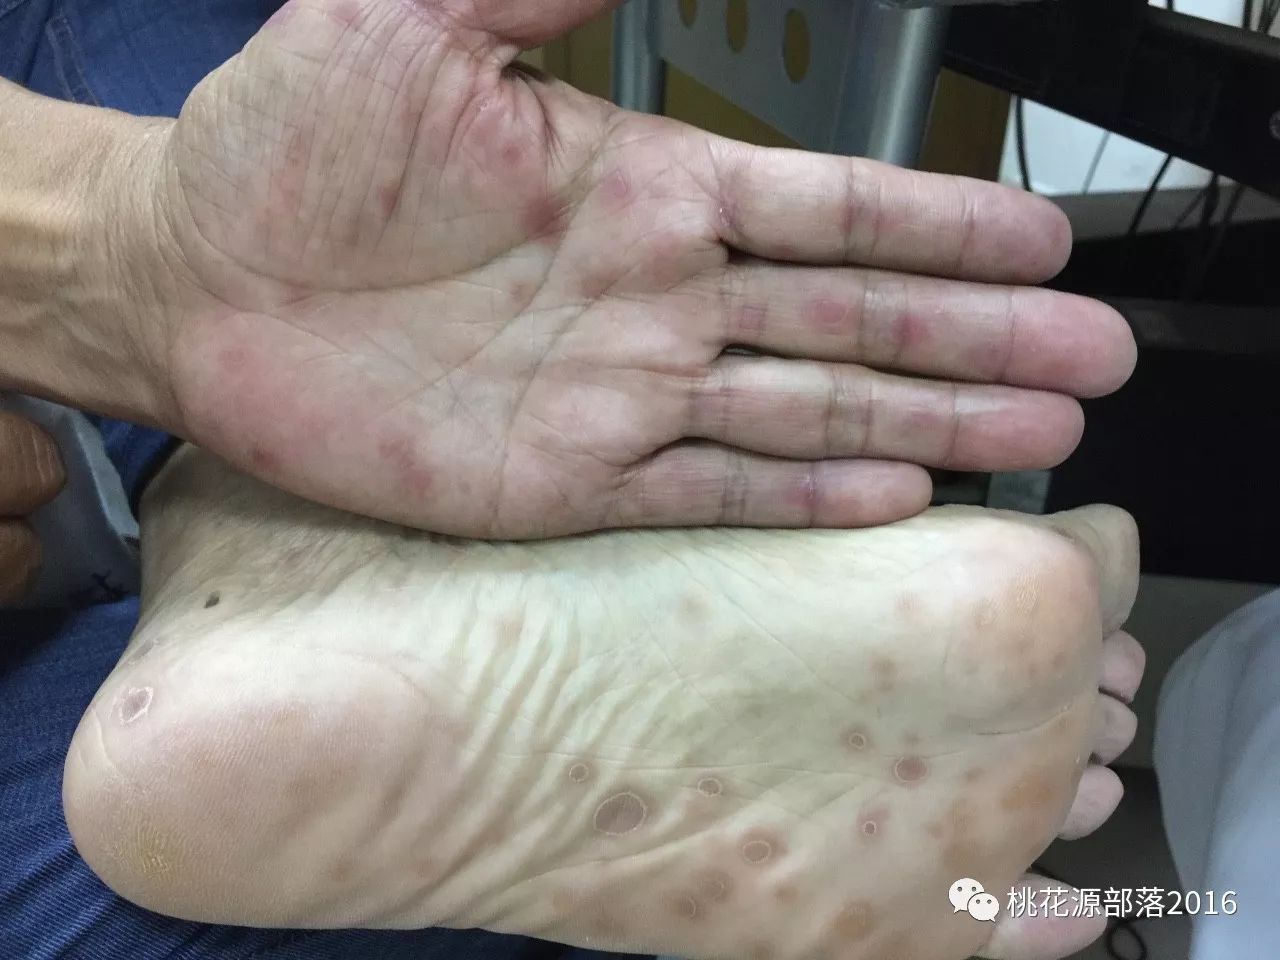 长在手掌,足掌的二期梅毒疹,发生在躯干时,易被误诊为玫瑰糠疹